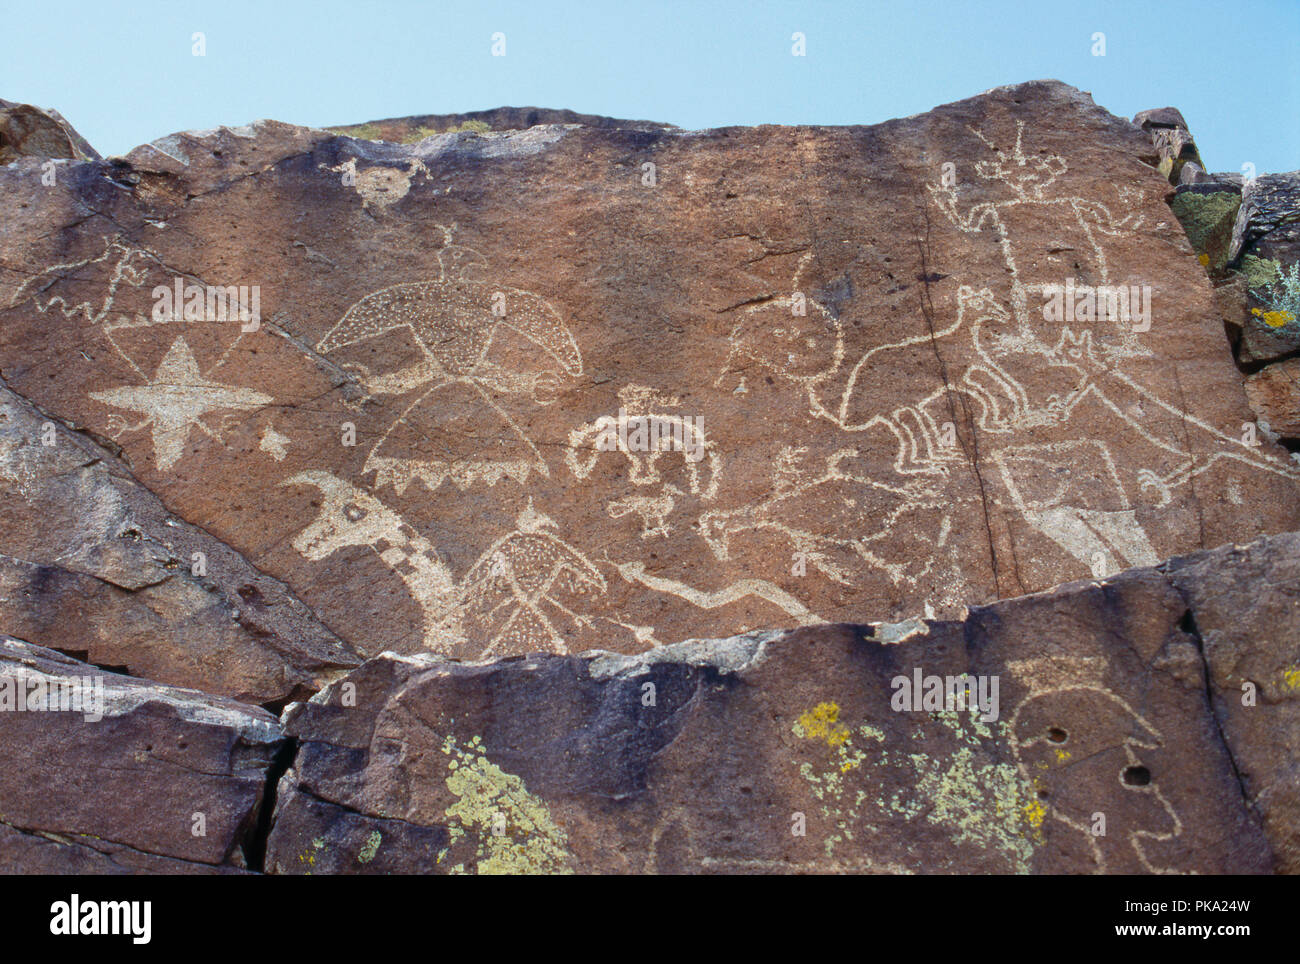 Thunderbird, gefiederten Schlange und andere Indianische Felszeichnungen in der Nähe von La Cumbrecita, New Mexico. Foto Stockfoto